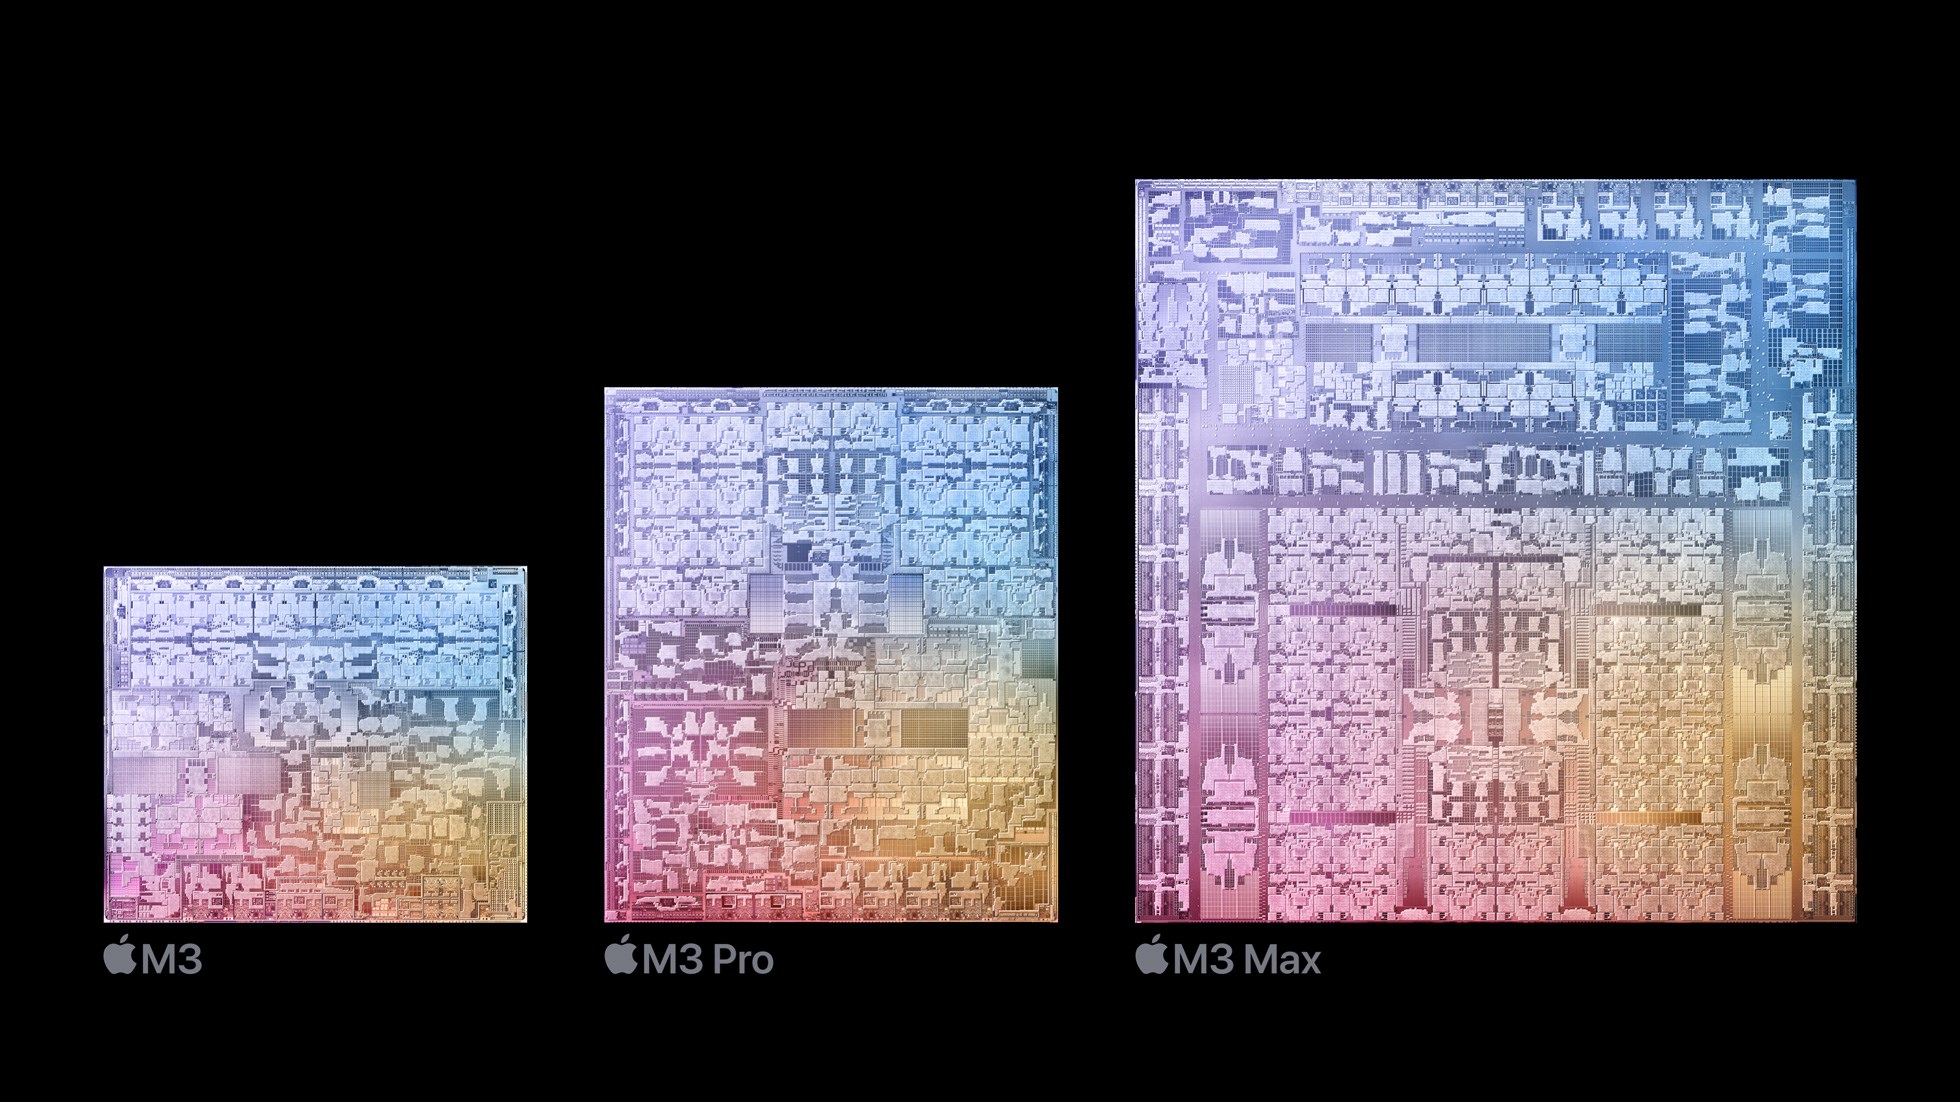 Apple M3 vs M2: Performans farkı ne kadar?